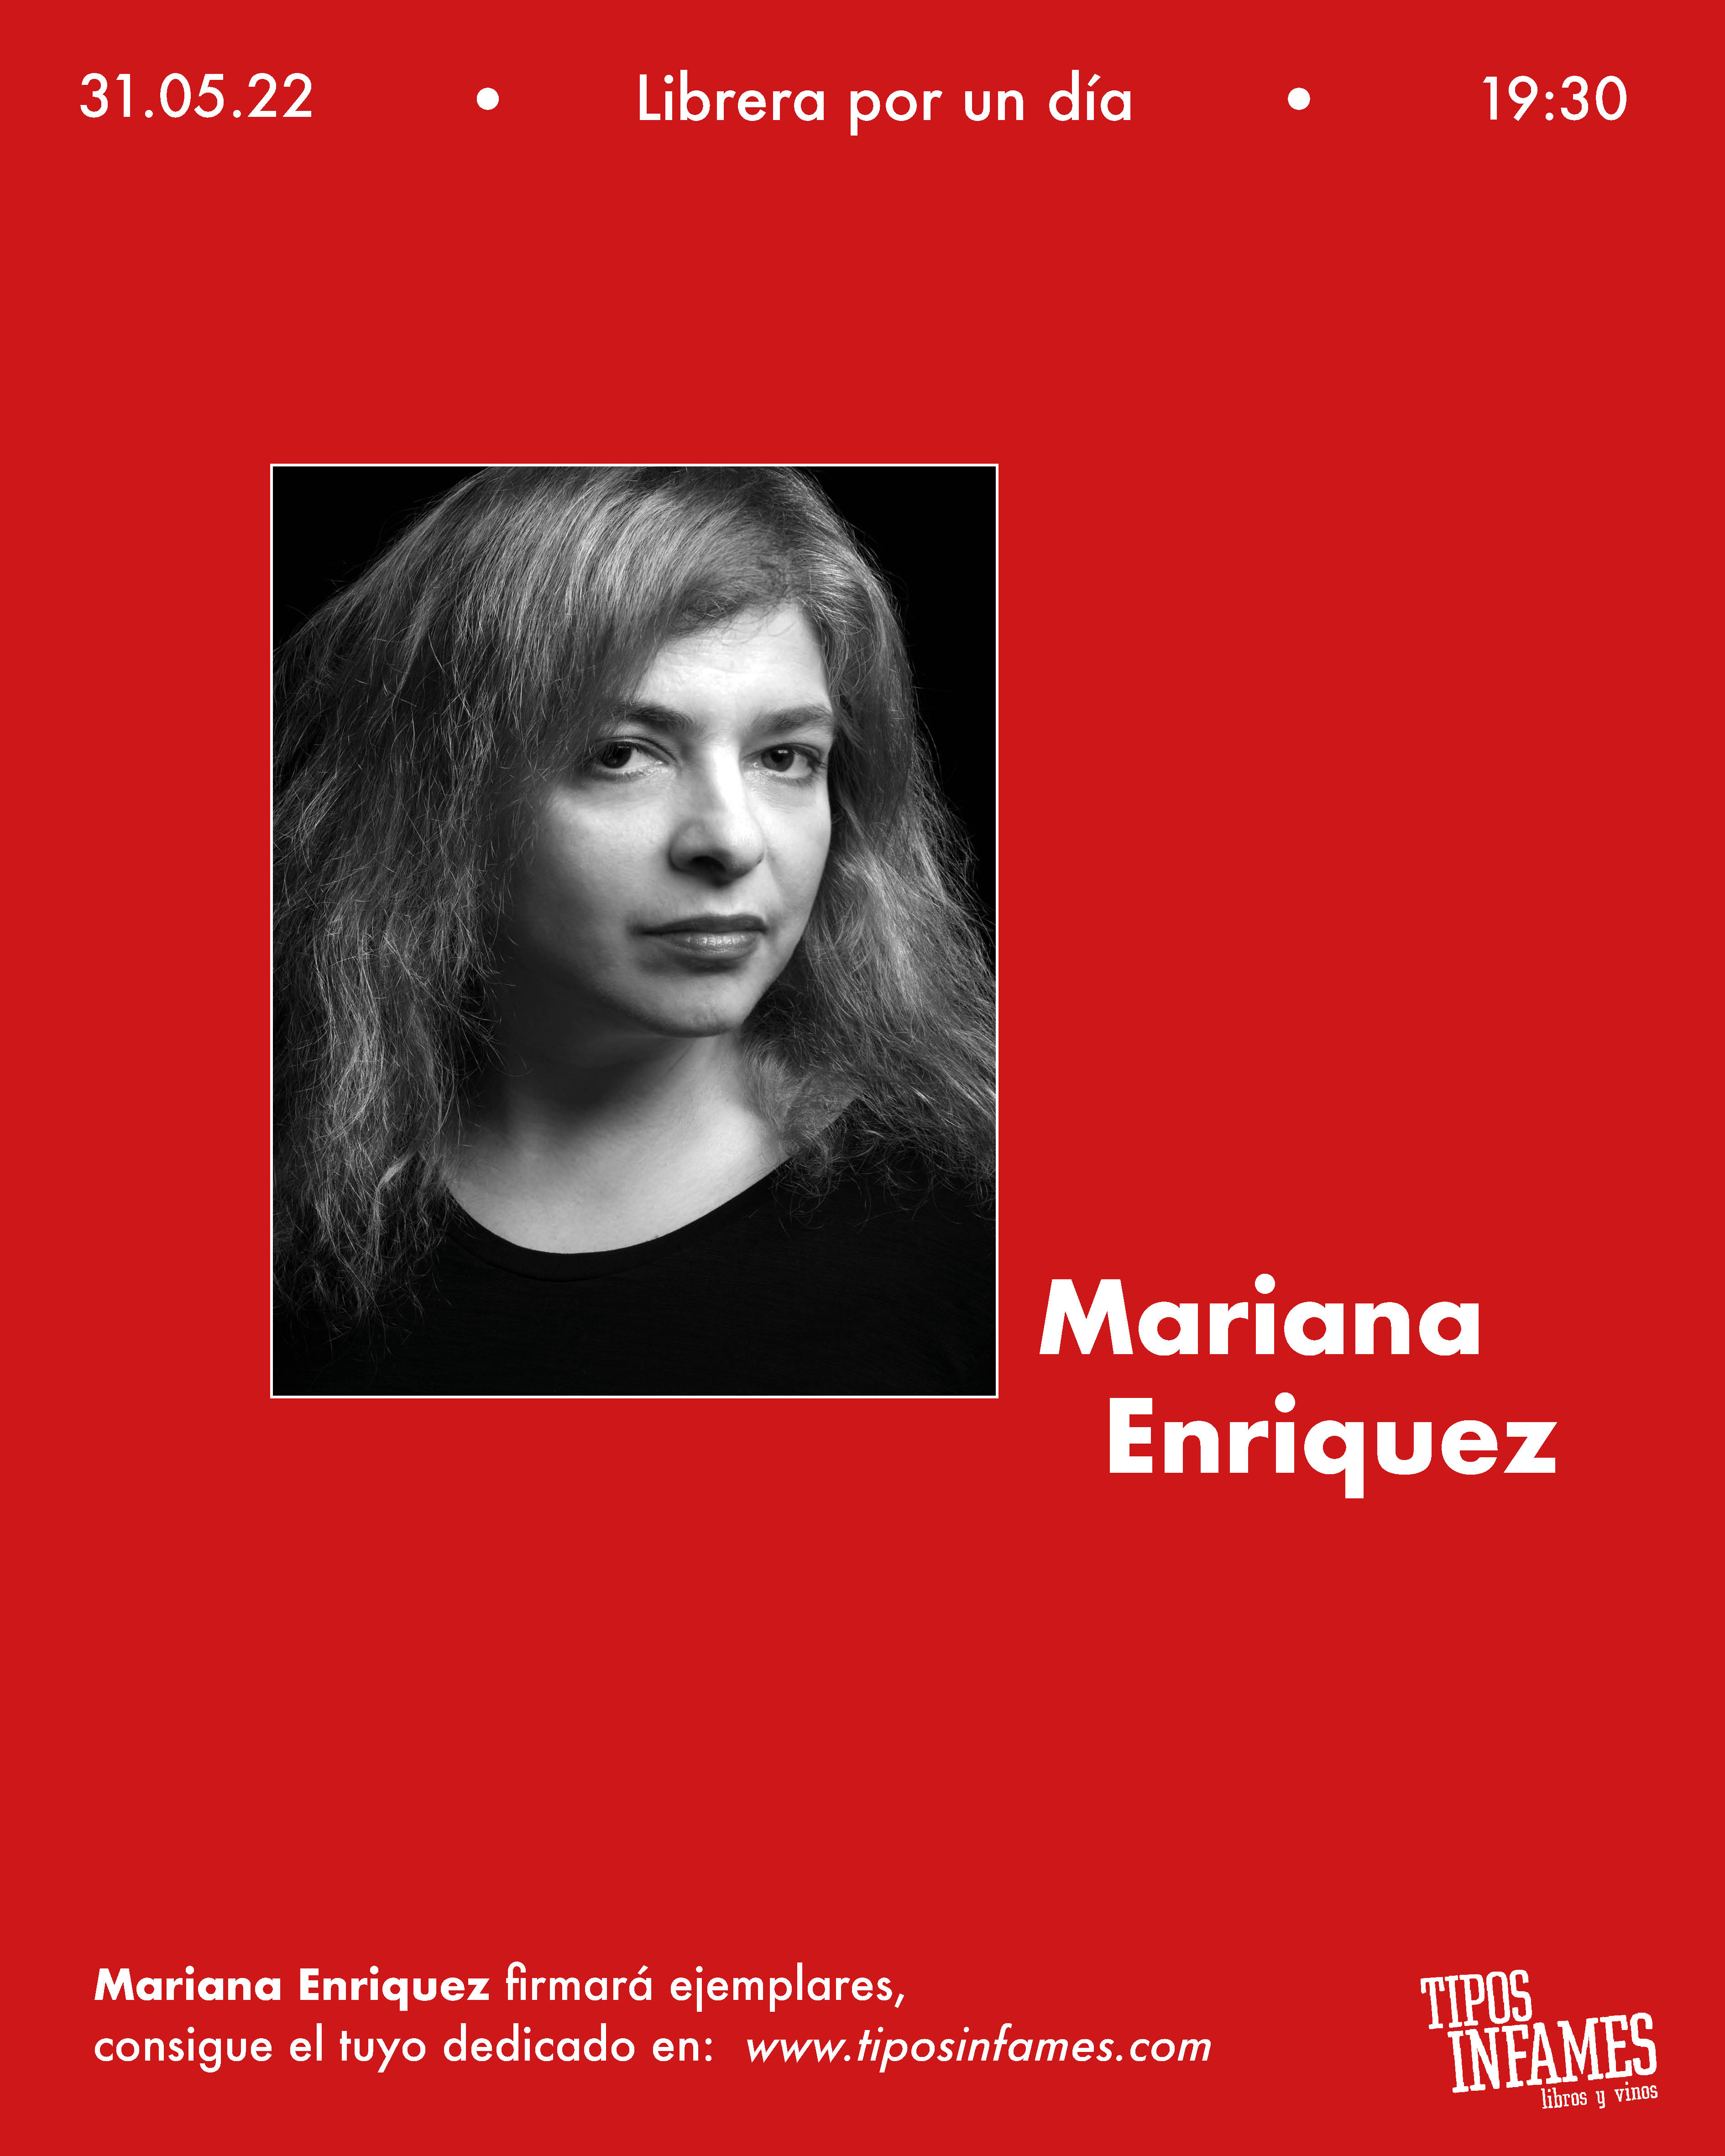 Mariana Enriquez, librera por un día